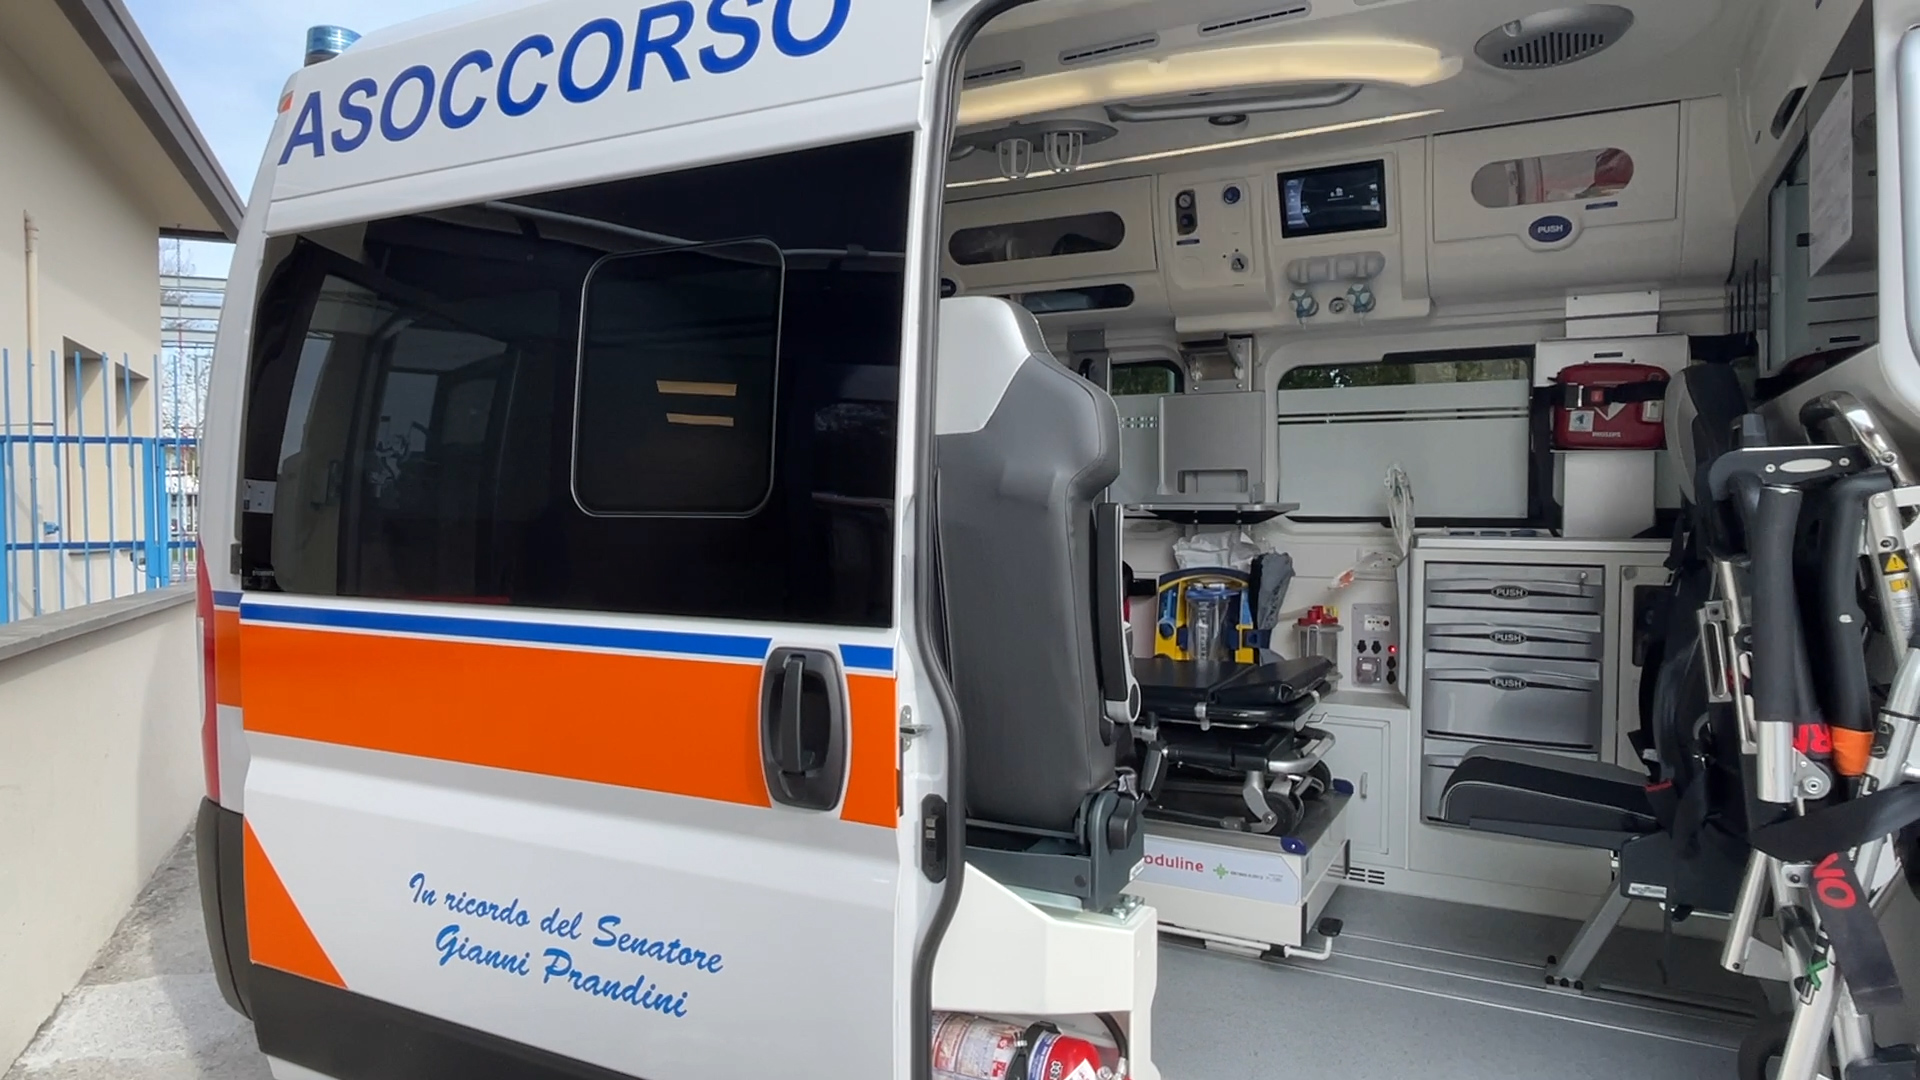 Bresciasoccorso, la nuova ambulanza dedicata a Gianni Prandini